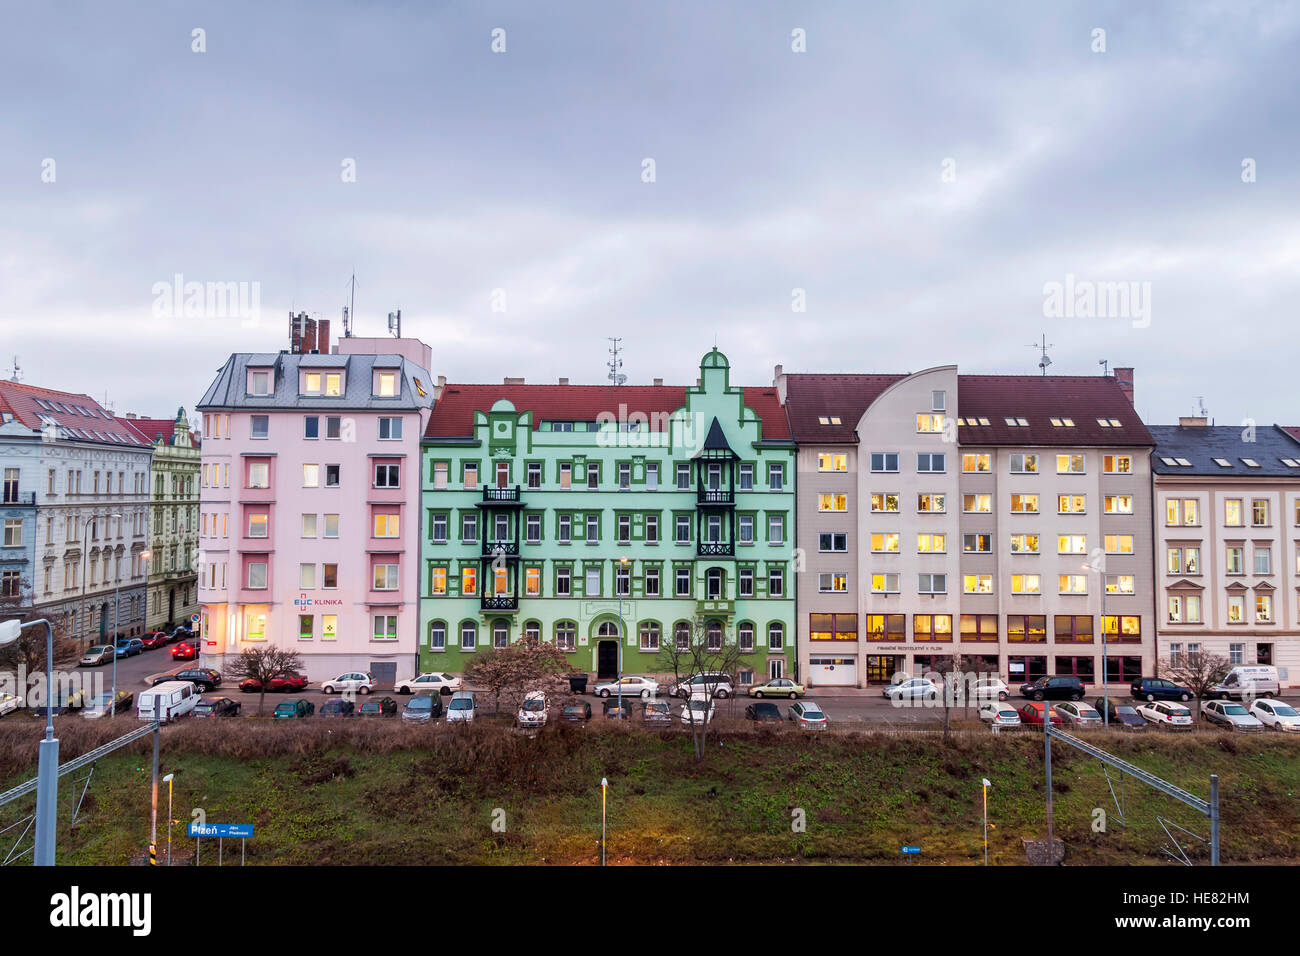 Les maisons colorées de Pilsen, Plzen, République Tchèque, Europe Banque D'Images